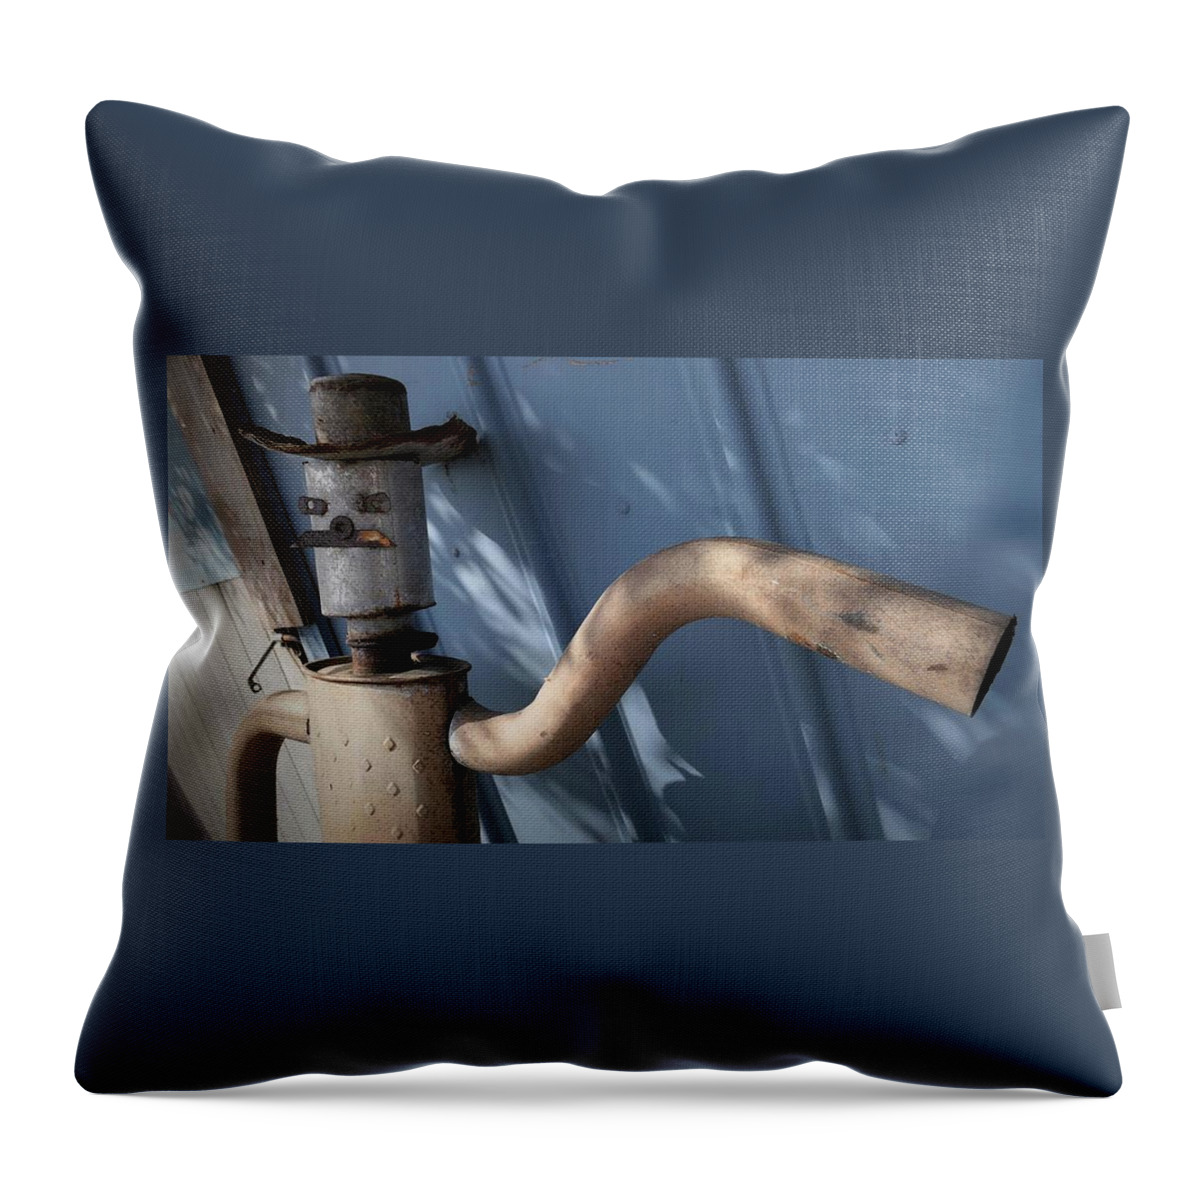 Sausalito Throw Pillow featuring the photograph Muffler Man by John Parulis